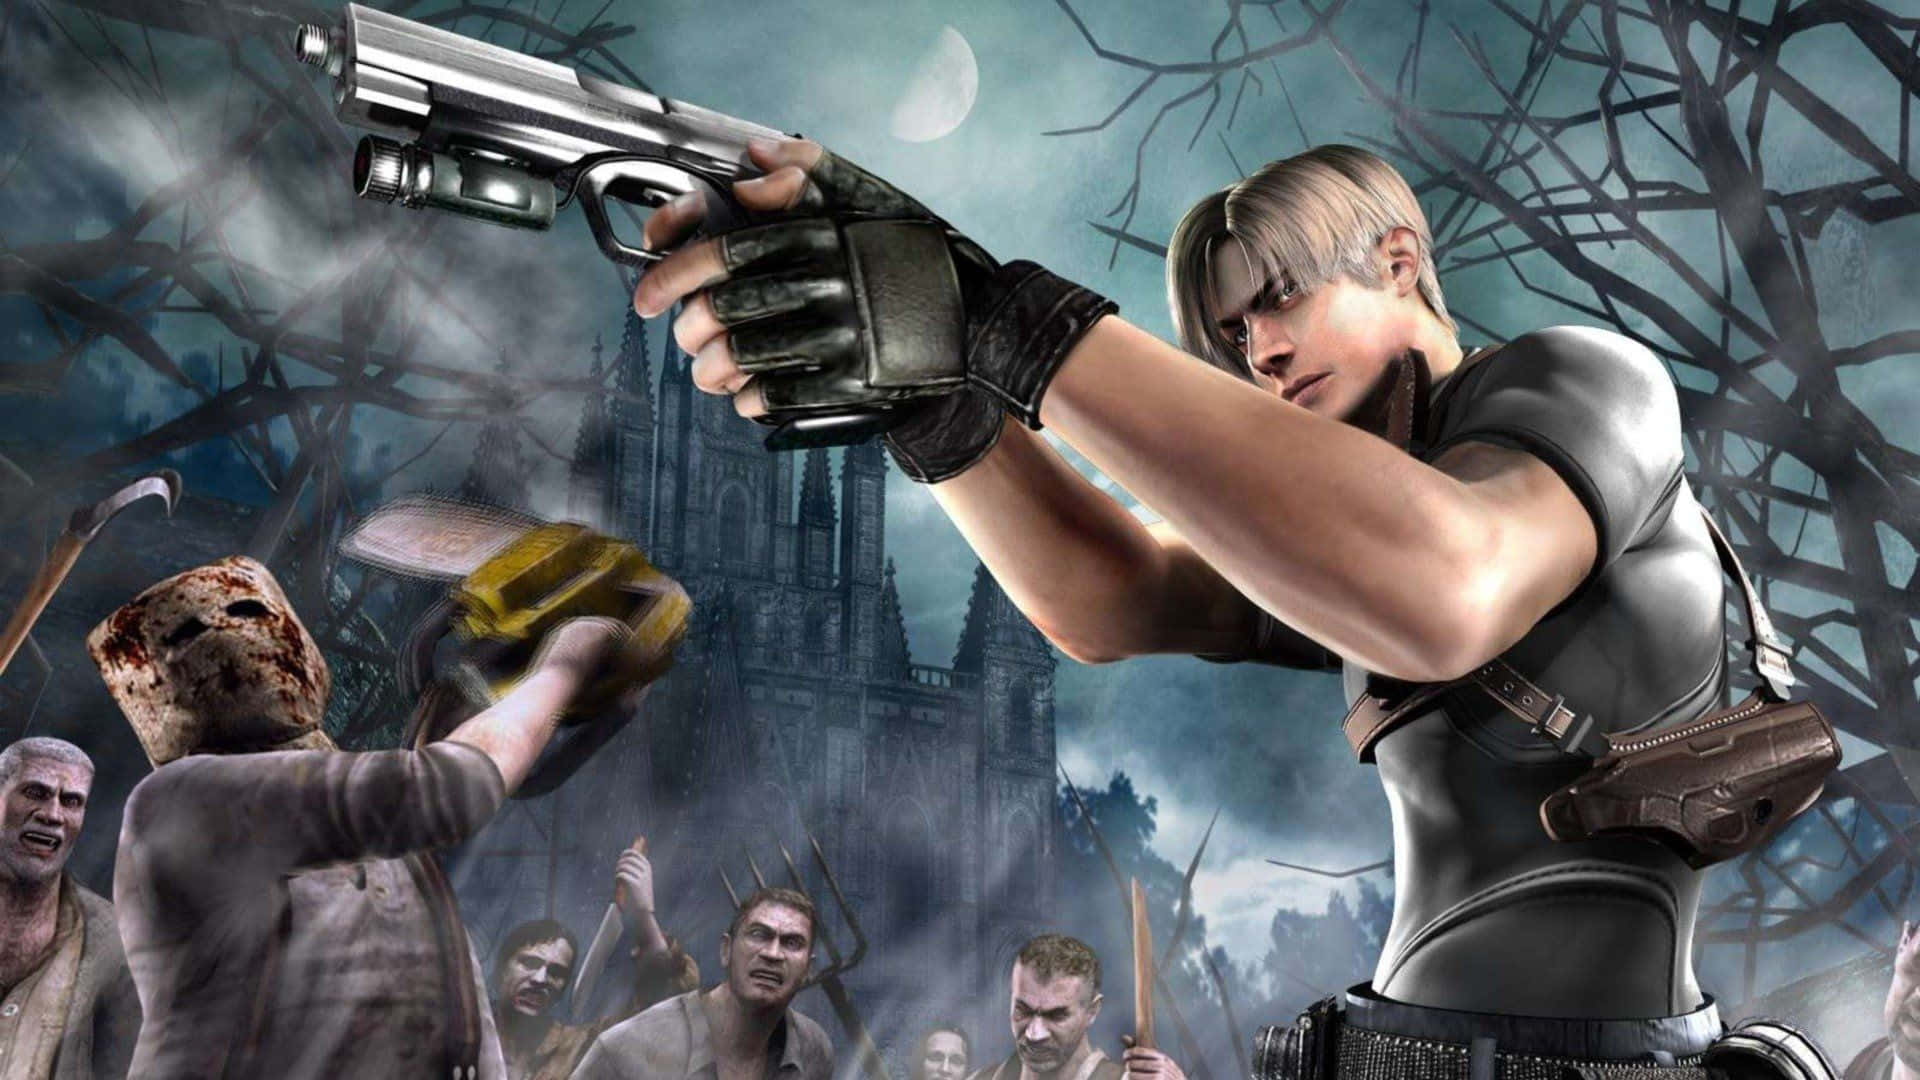 Intense Resident Evil action scene in high-definition